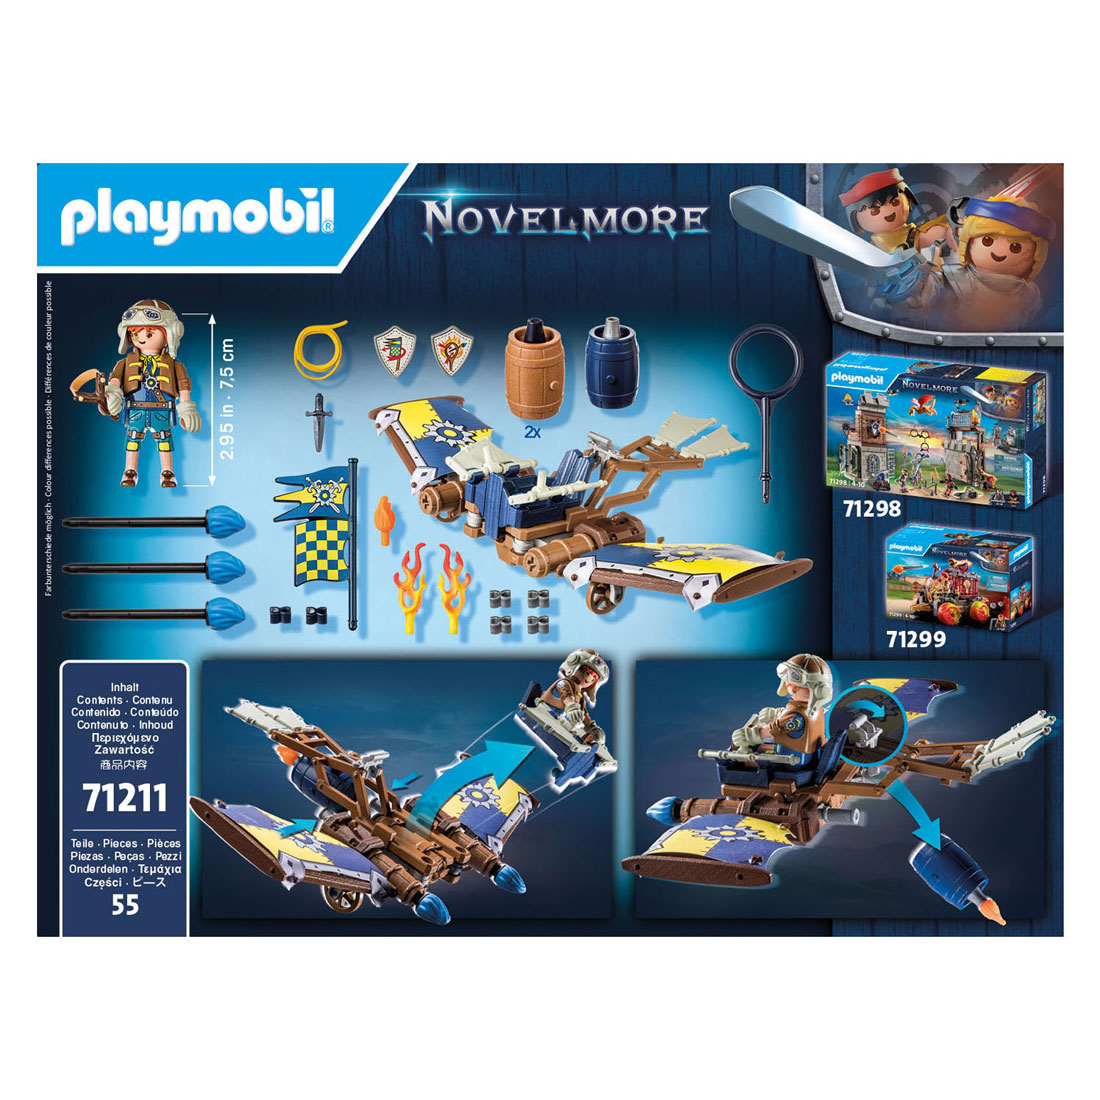 Playmobil Novelmore Dario's zweefvliegtuig - 71211